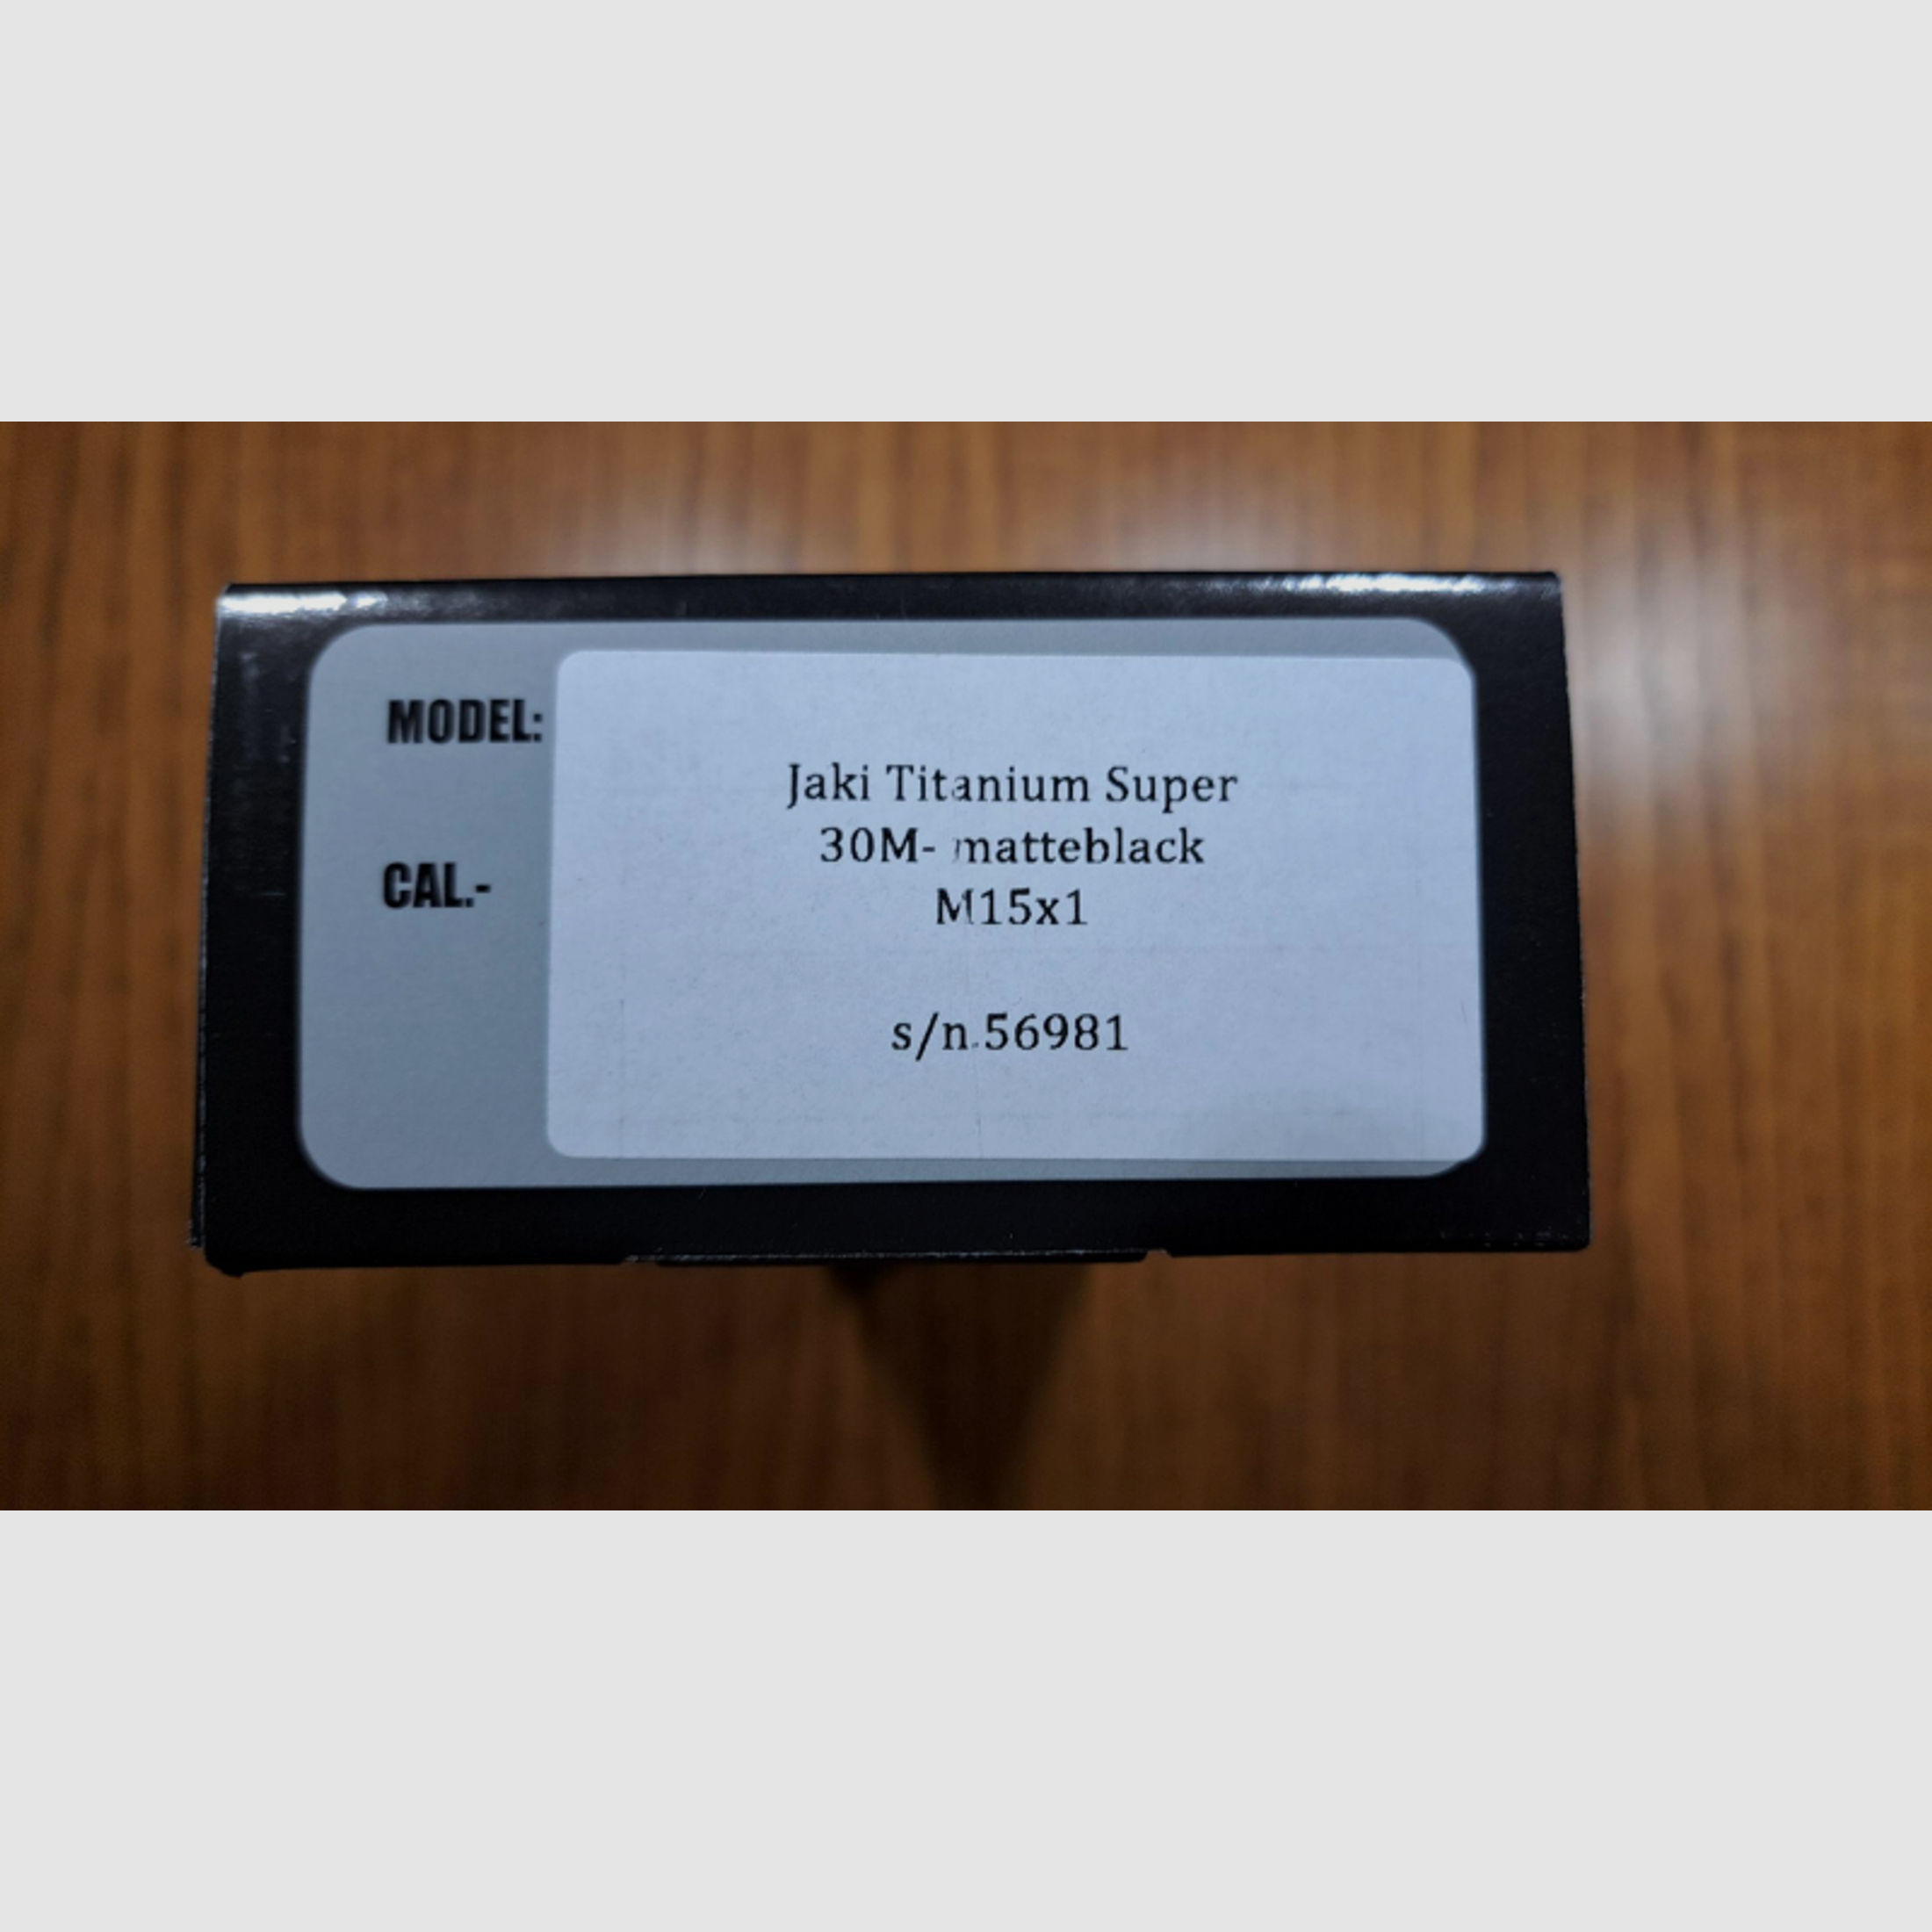 Schalldämpfer JAKI Titanium Super für Kal. .30Max , Gewinde M15x1